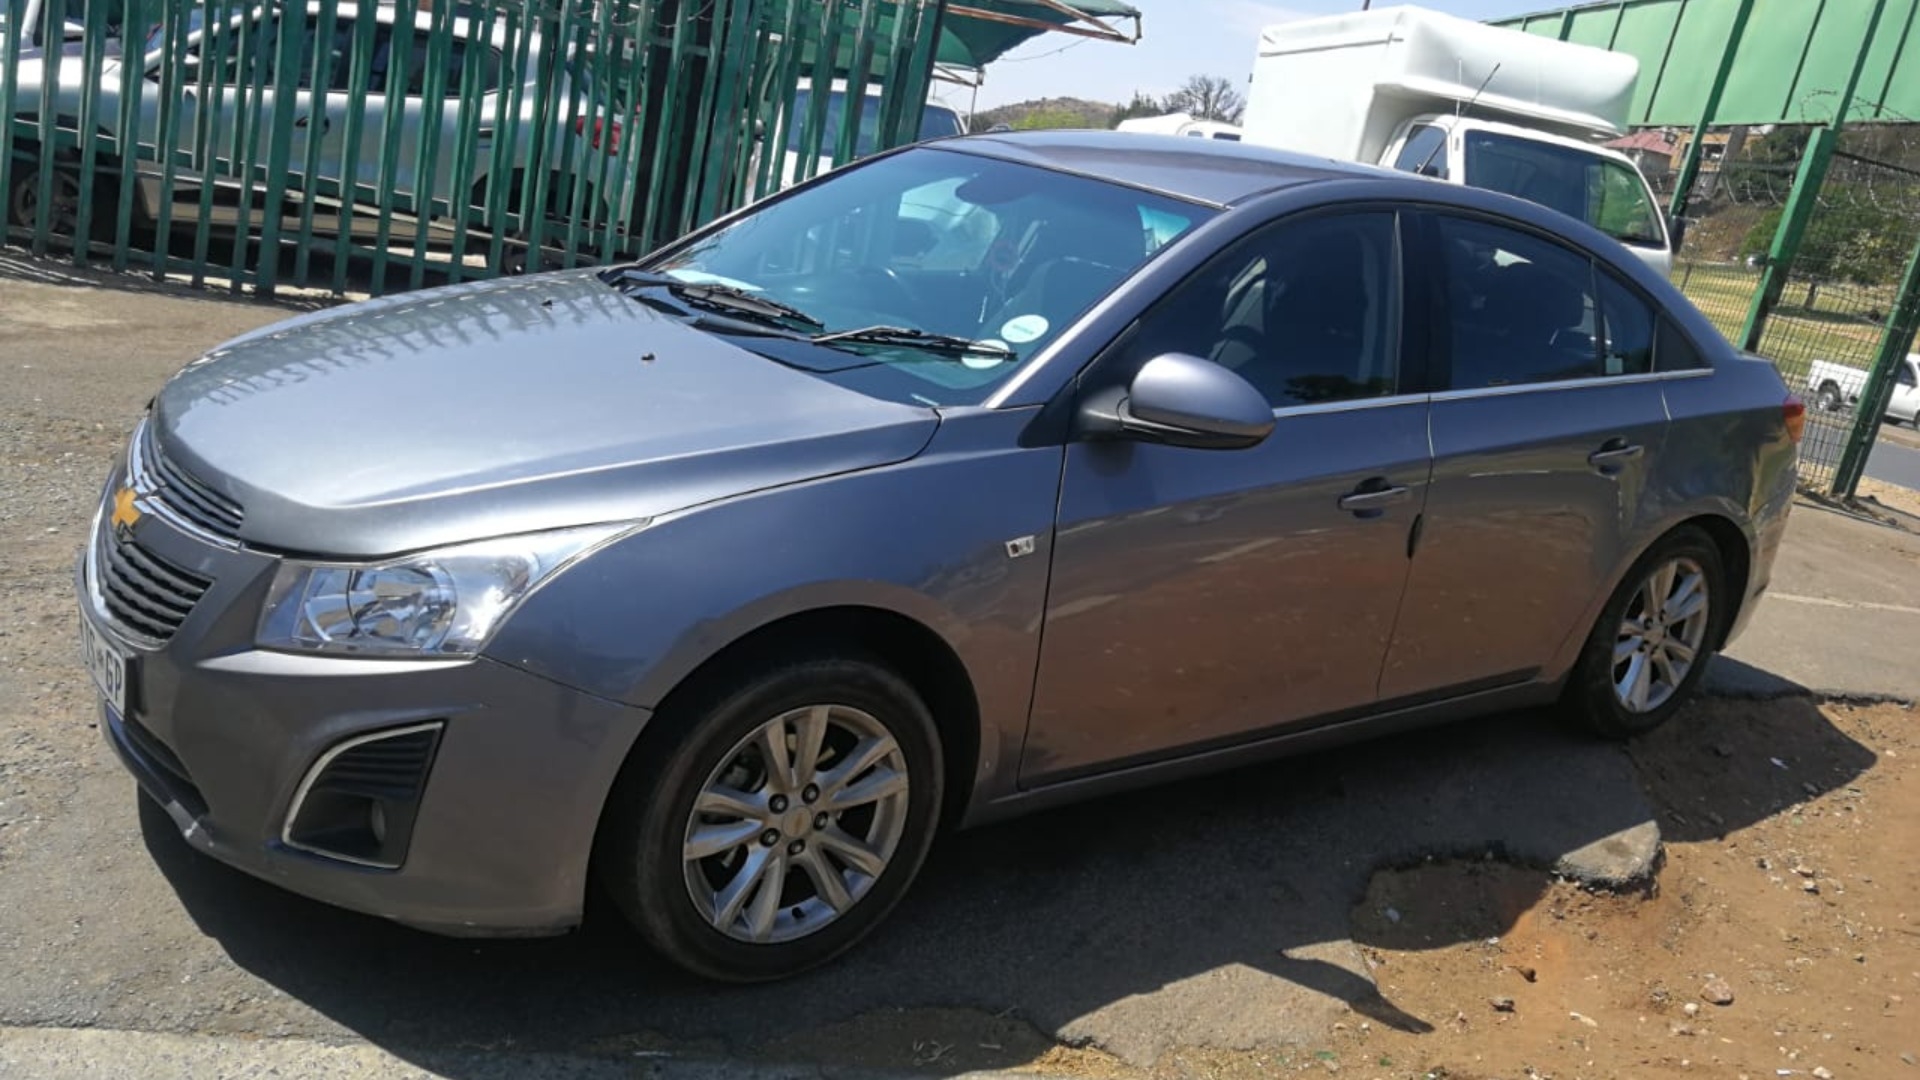 Chevrolet Cruze 1.6 LS for sale in Gauteng Auto Mart